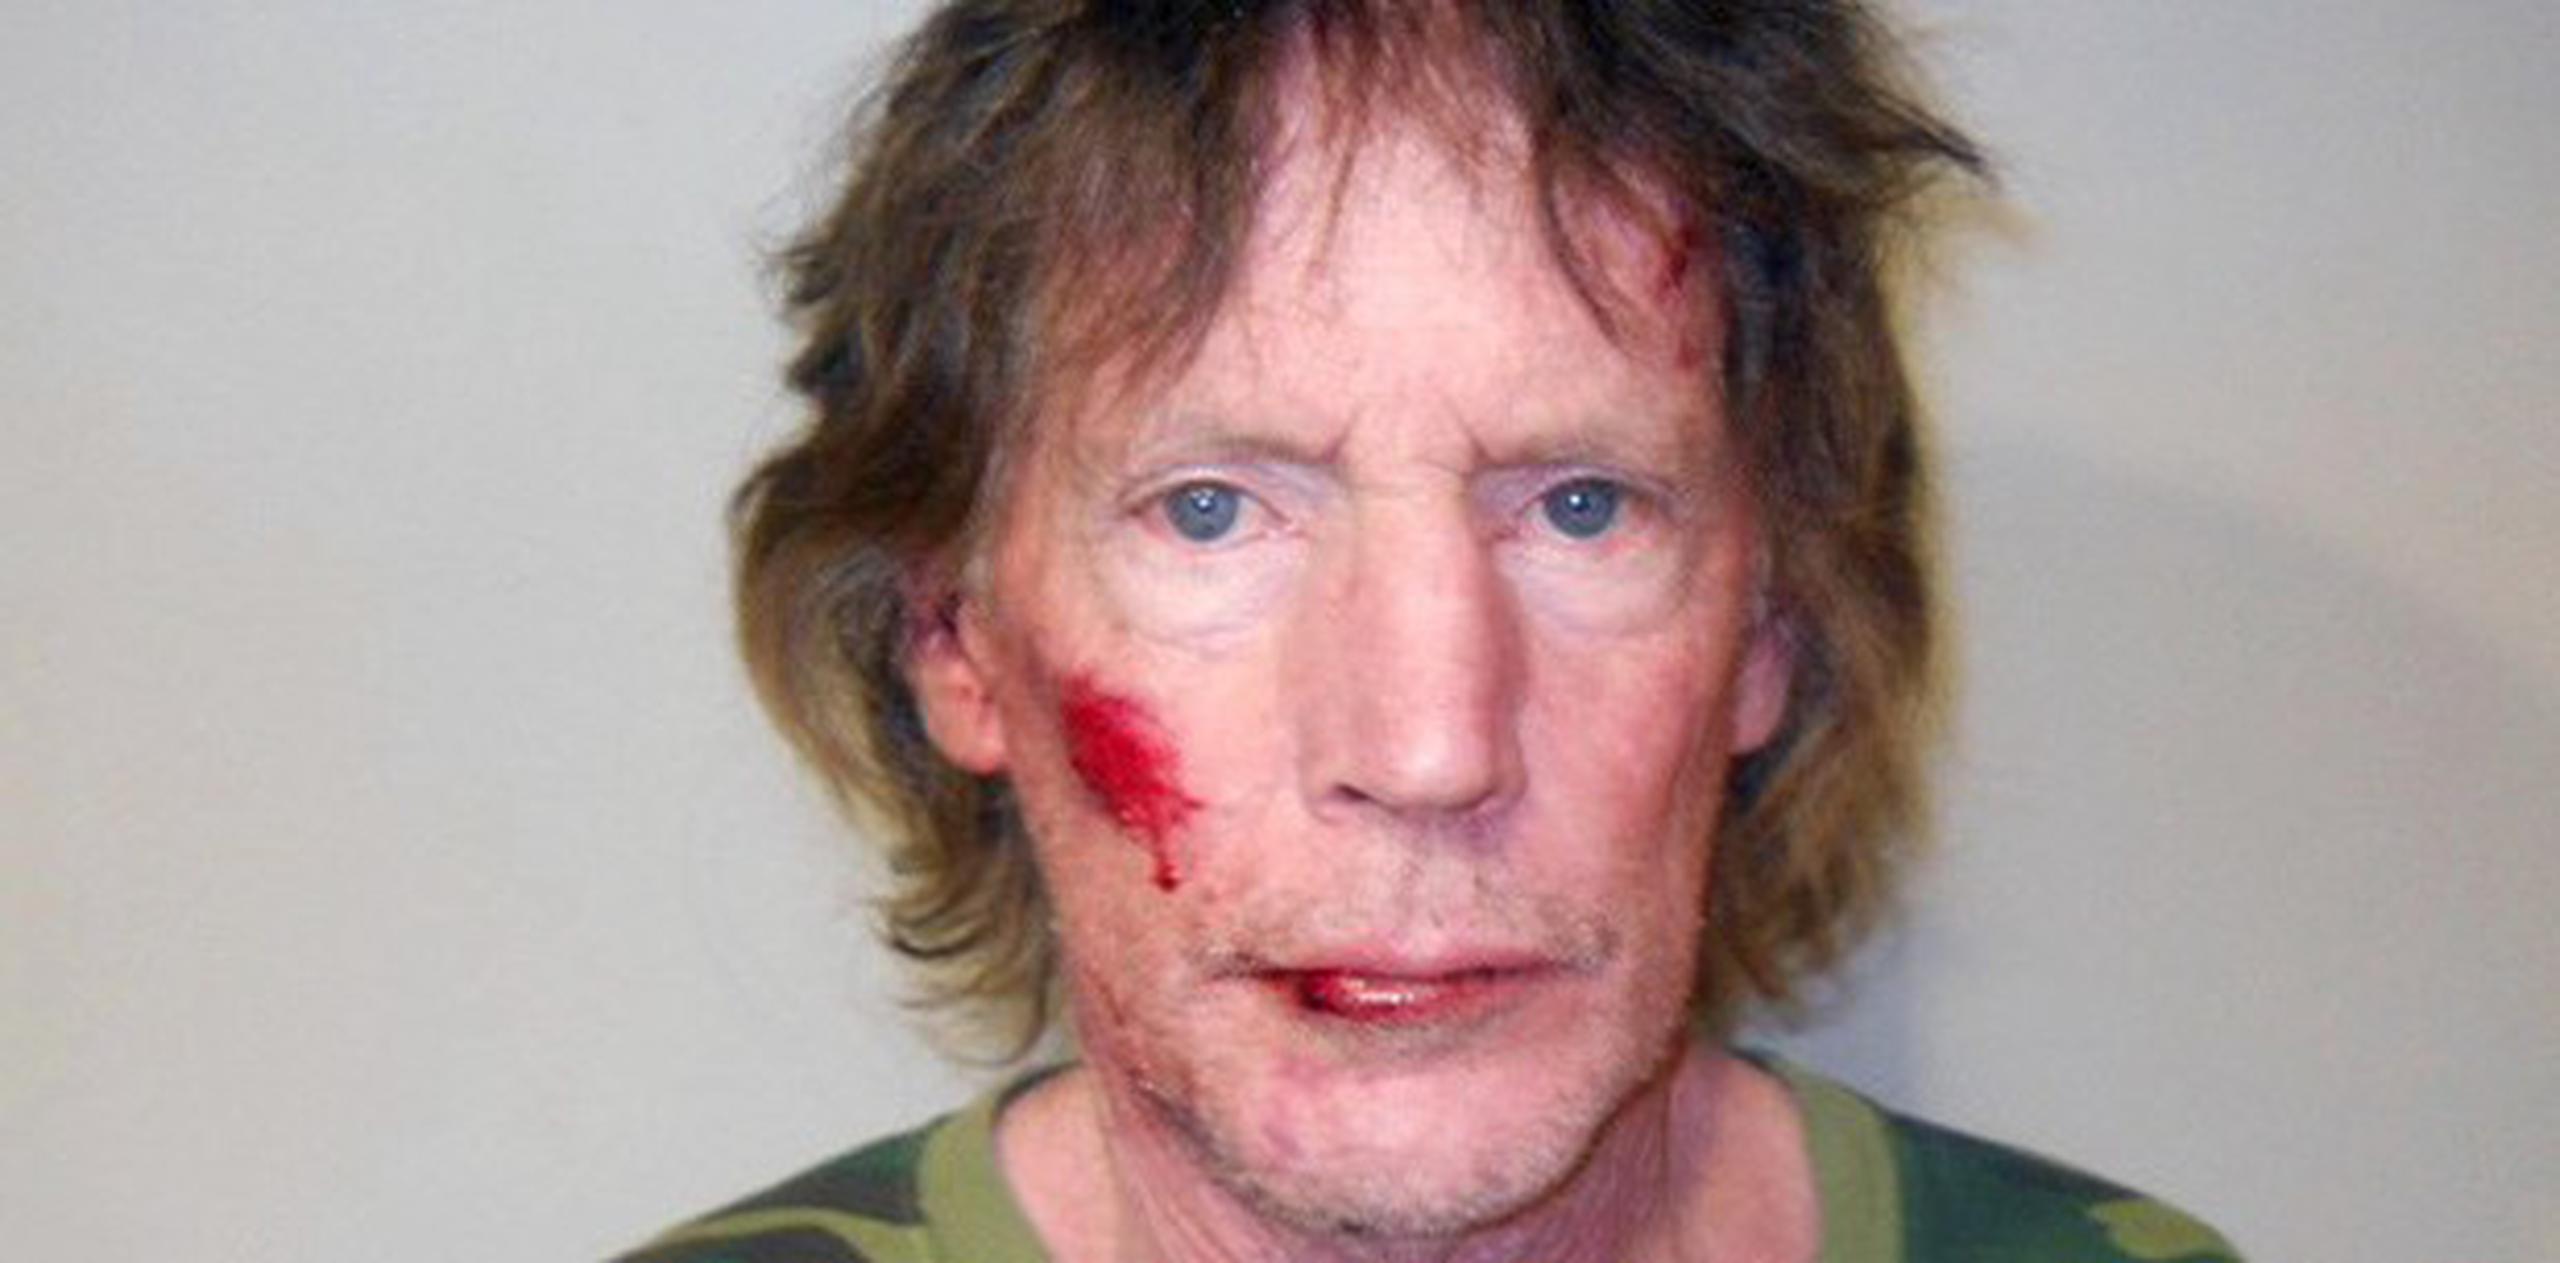 El sospechoso aparece en una foto difundida por el jefe policial del condado Pueblo, con el labio roto y una herida en el pómulo derecho, pero las autoridades afirman que no hubo forcejeo al arrestarlo. (AP)